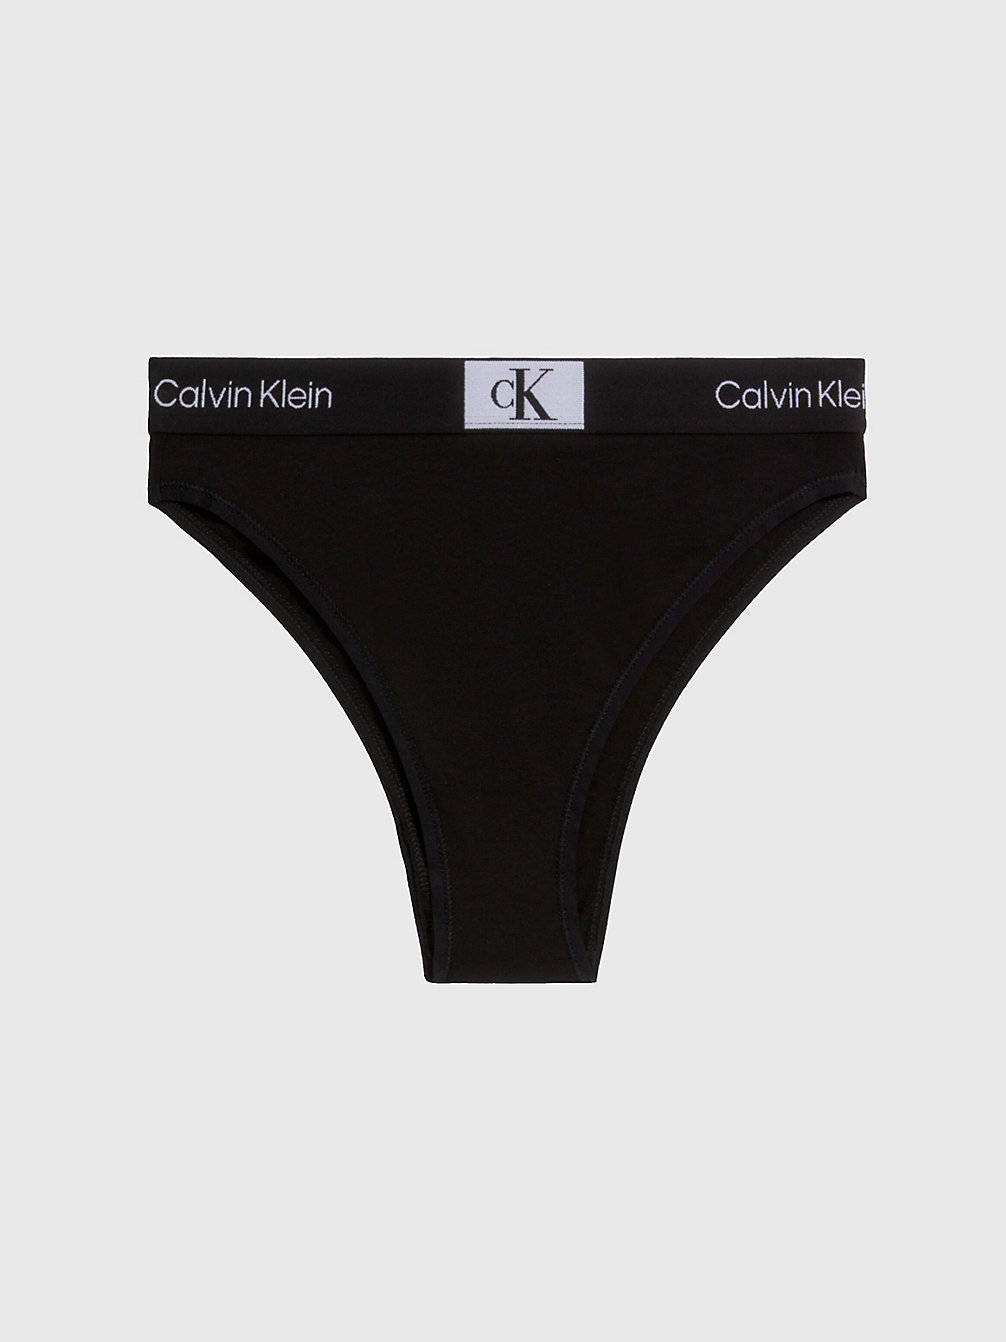 BLACK Culotte Brésilienne Taille Haute - Ck96 undefined femmes Calvin Klein